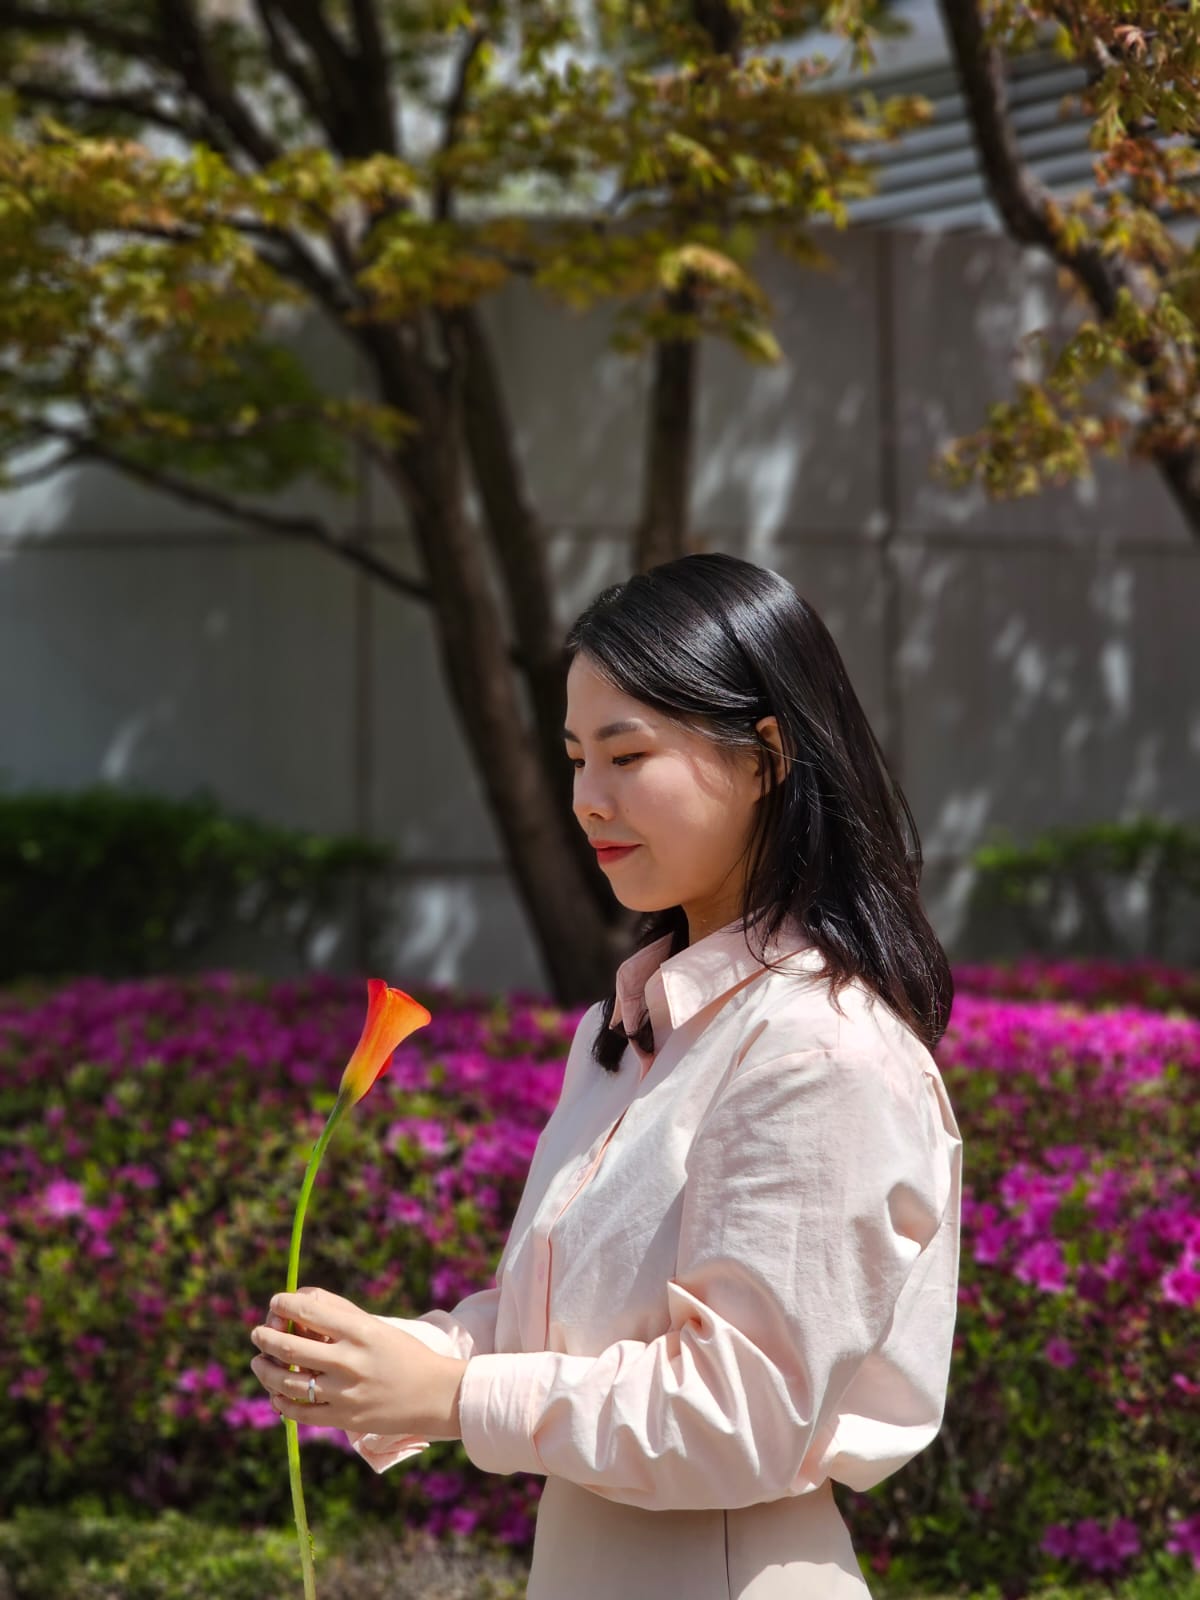 Eine koreanische Floristin hält eine rote Blume in der Hand und betrachtet diese.